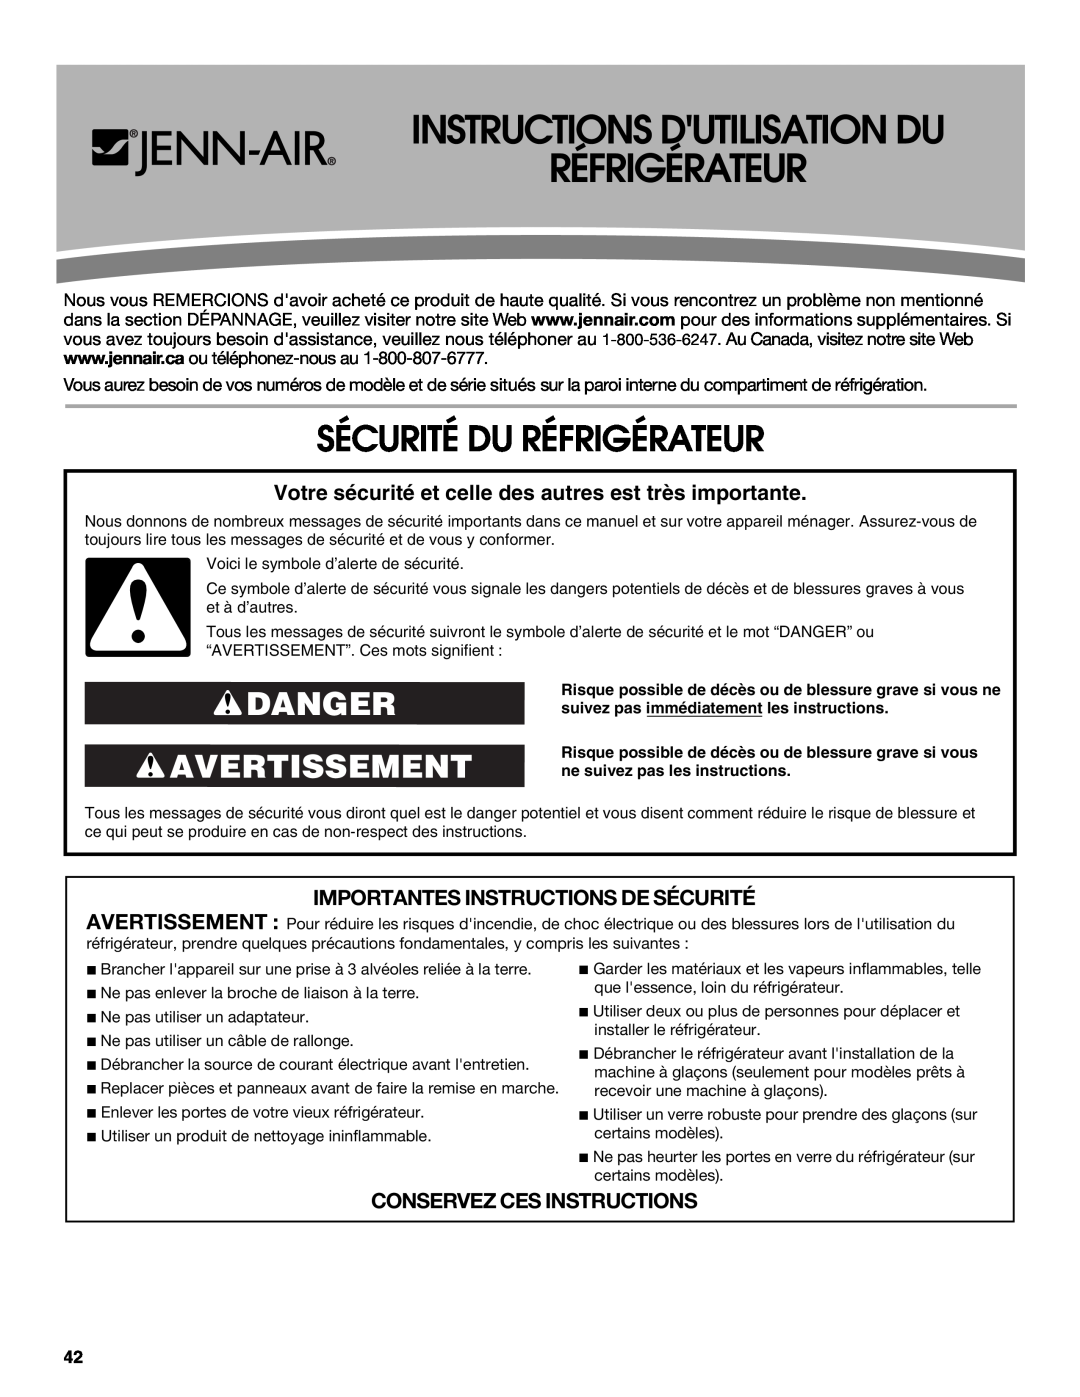 Jenn-Air JFC2089WEM Instructions Dutilisation Du Réfrigérateur, Sécurité Du Réfrigérateur, Danger Avertissement 